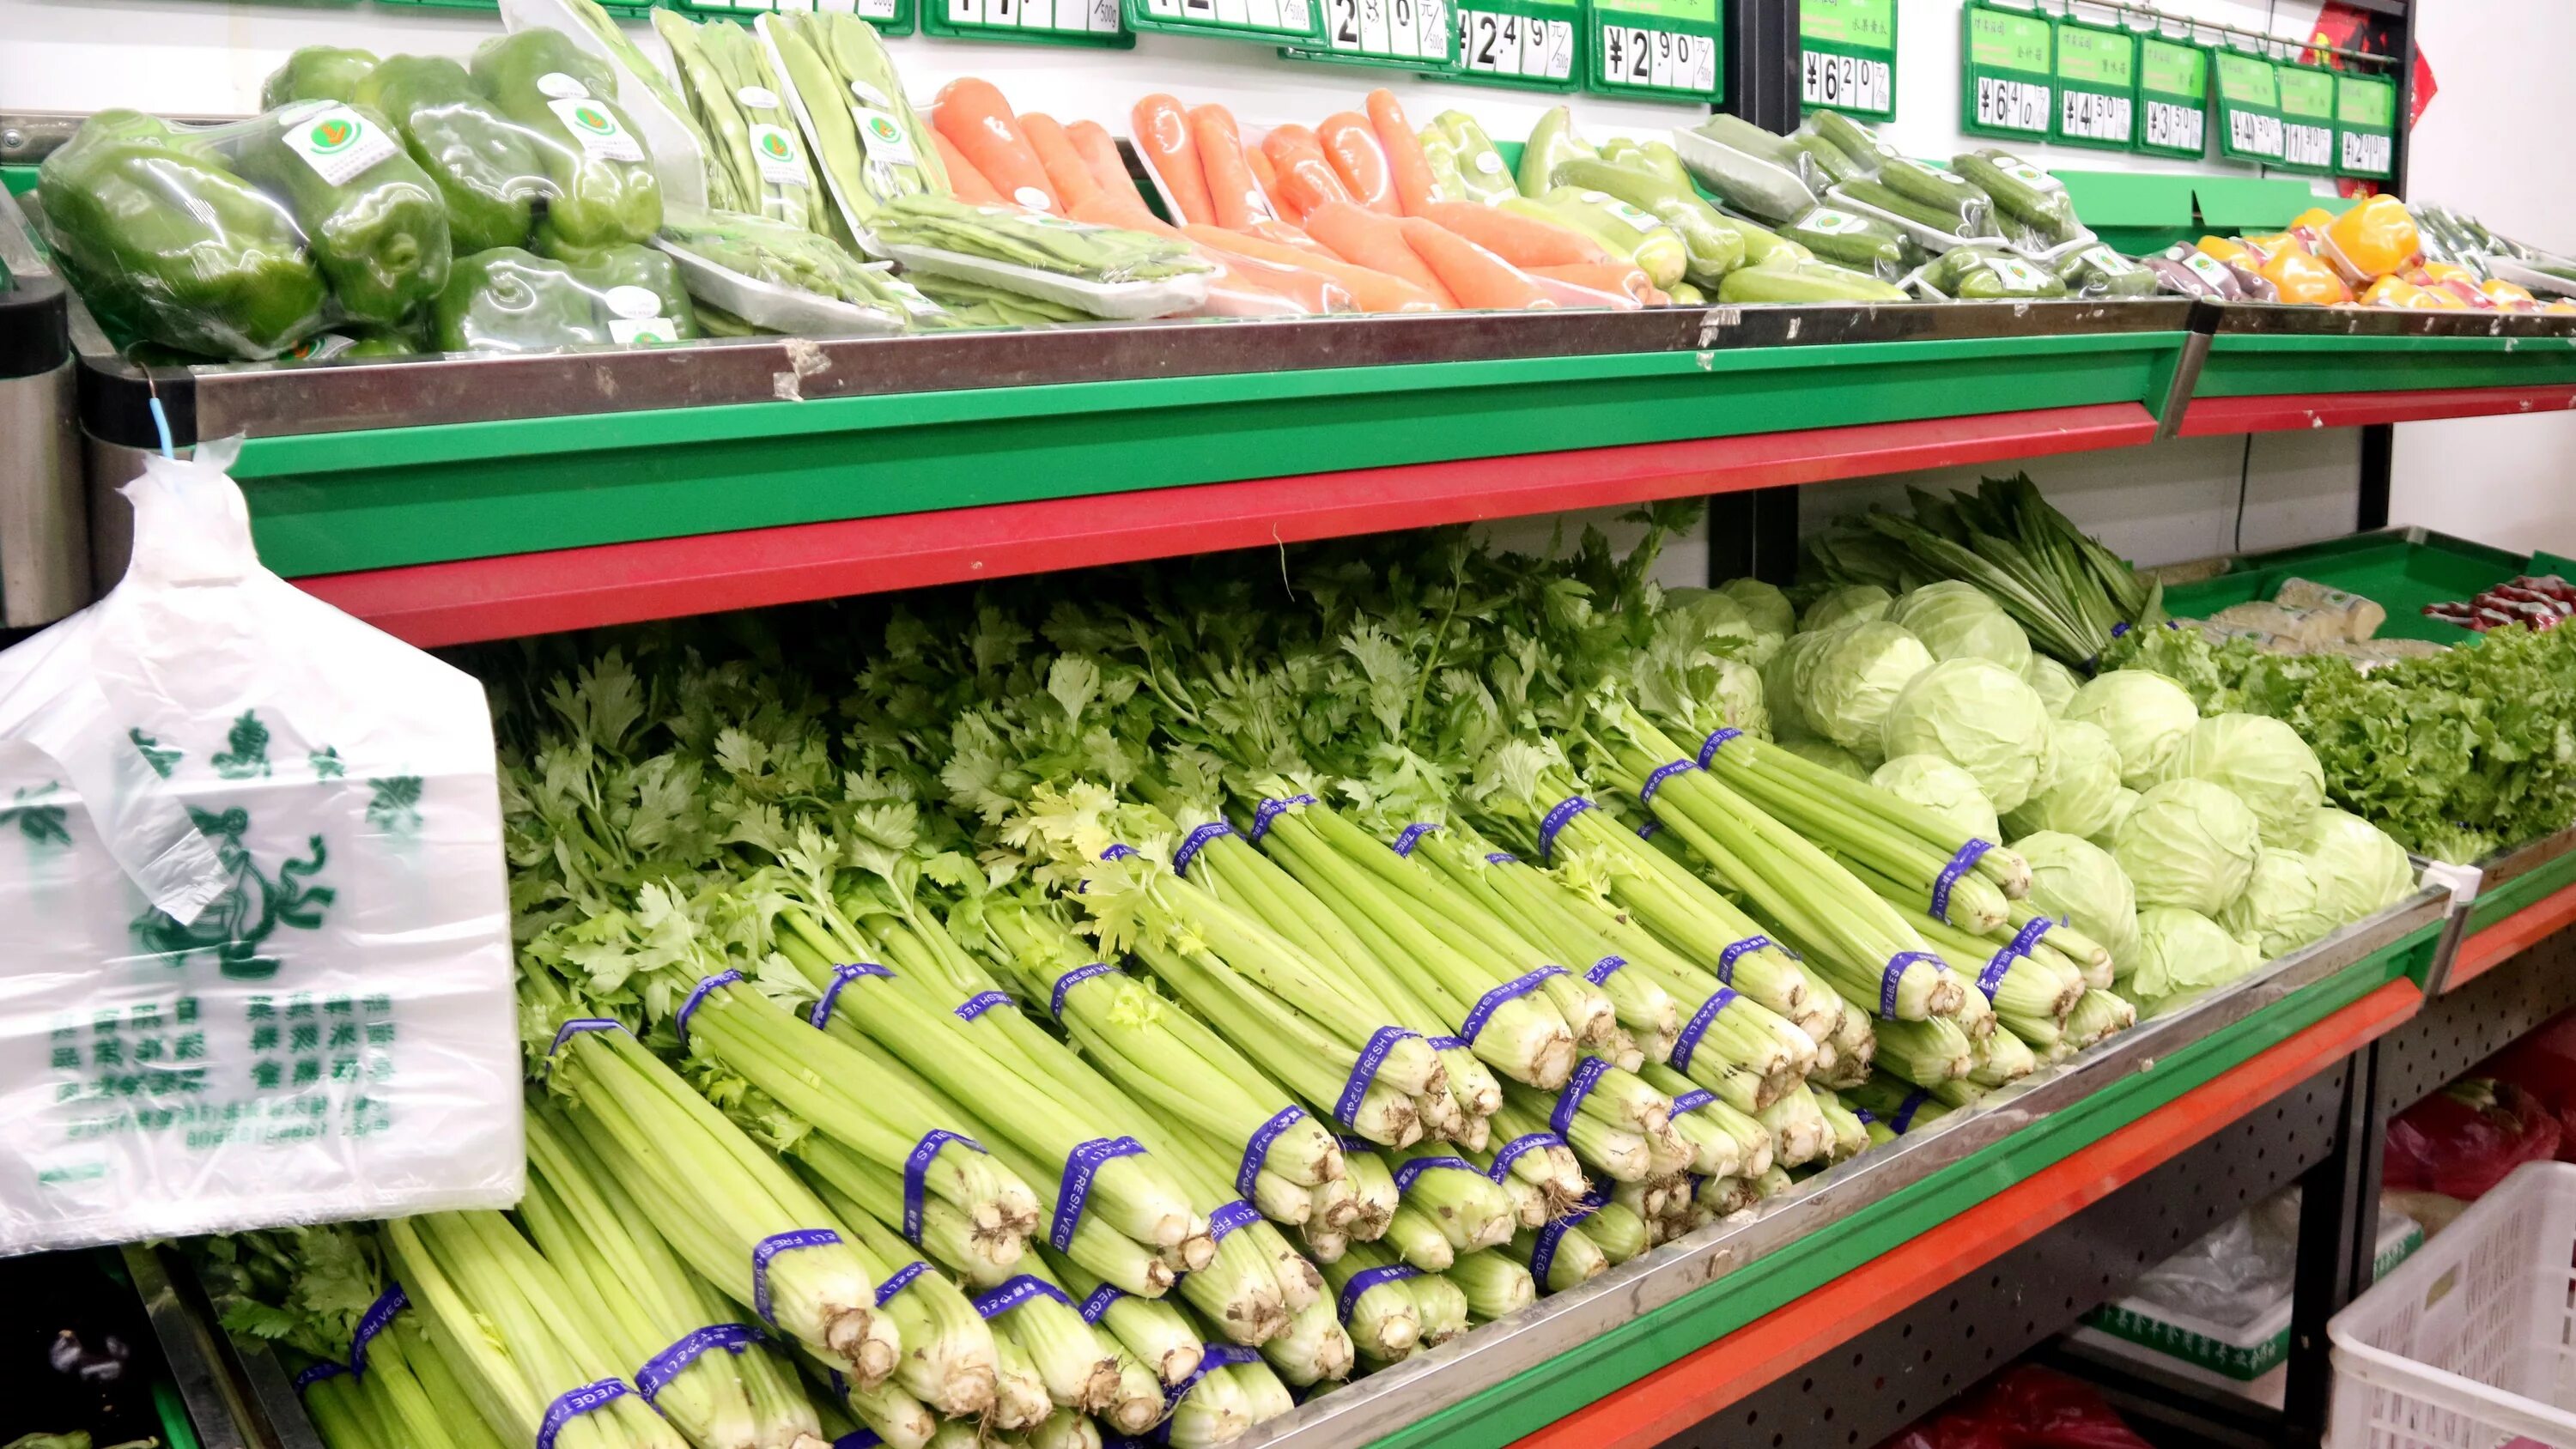 Сельдерей за кг. Сельдерей в магазине. Овощи зелень выкладка. Зелень в магазине. Сельдерей в супермаркете.